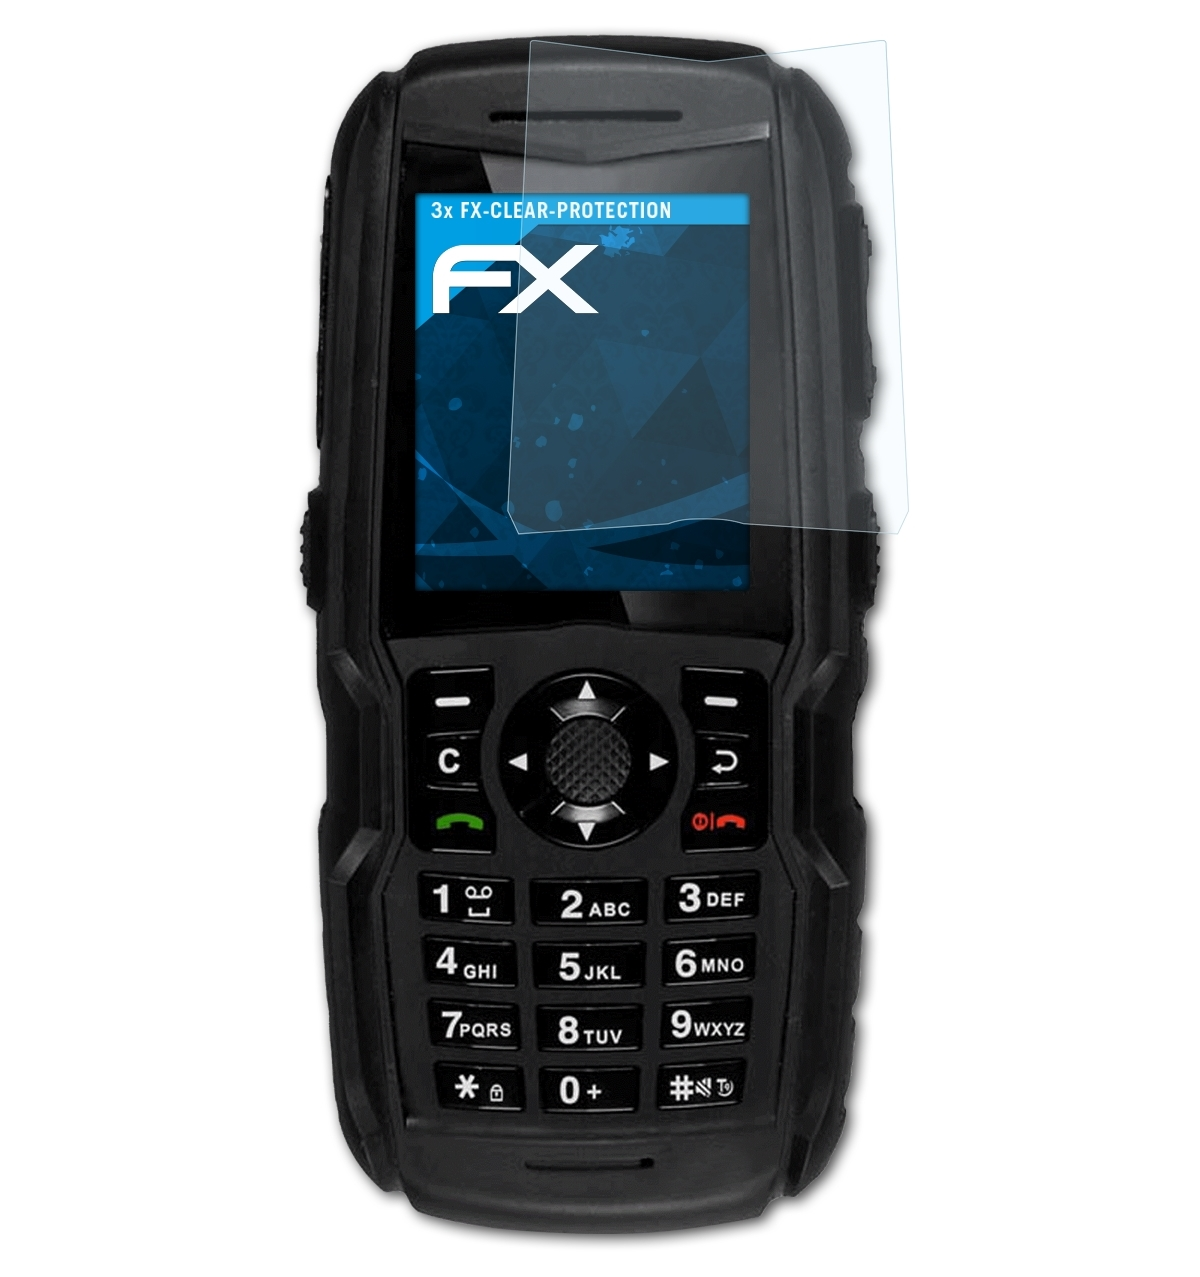 3x Sonim XP5300 Displayschutz(für FX-Clear Force ATFOLIX 3G)